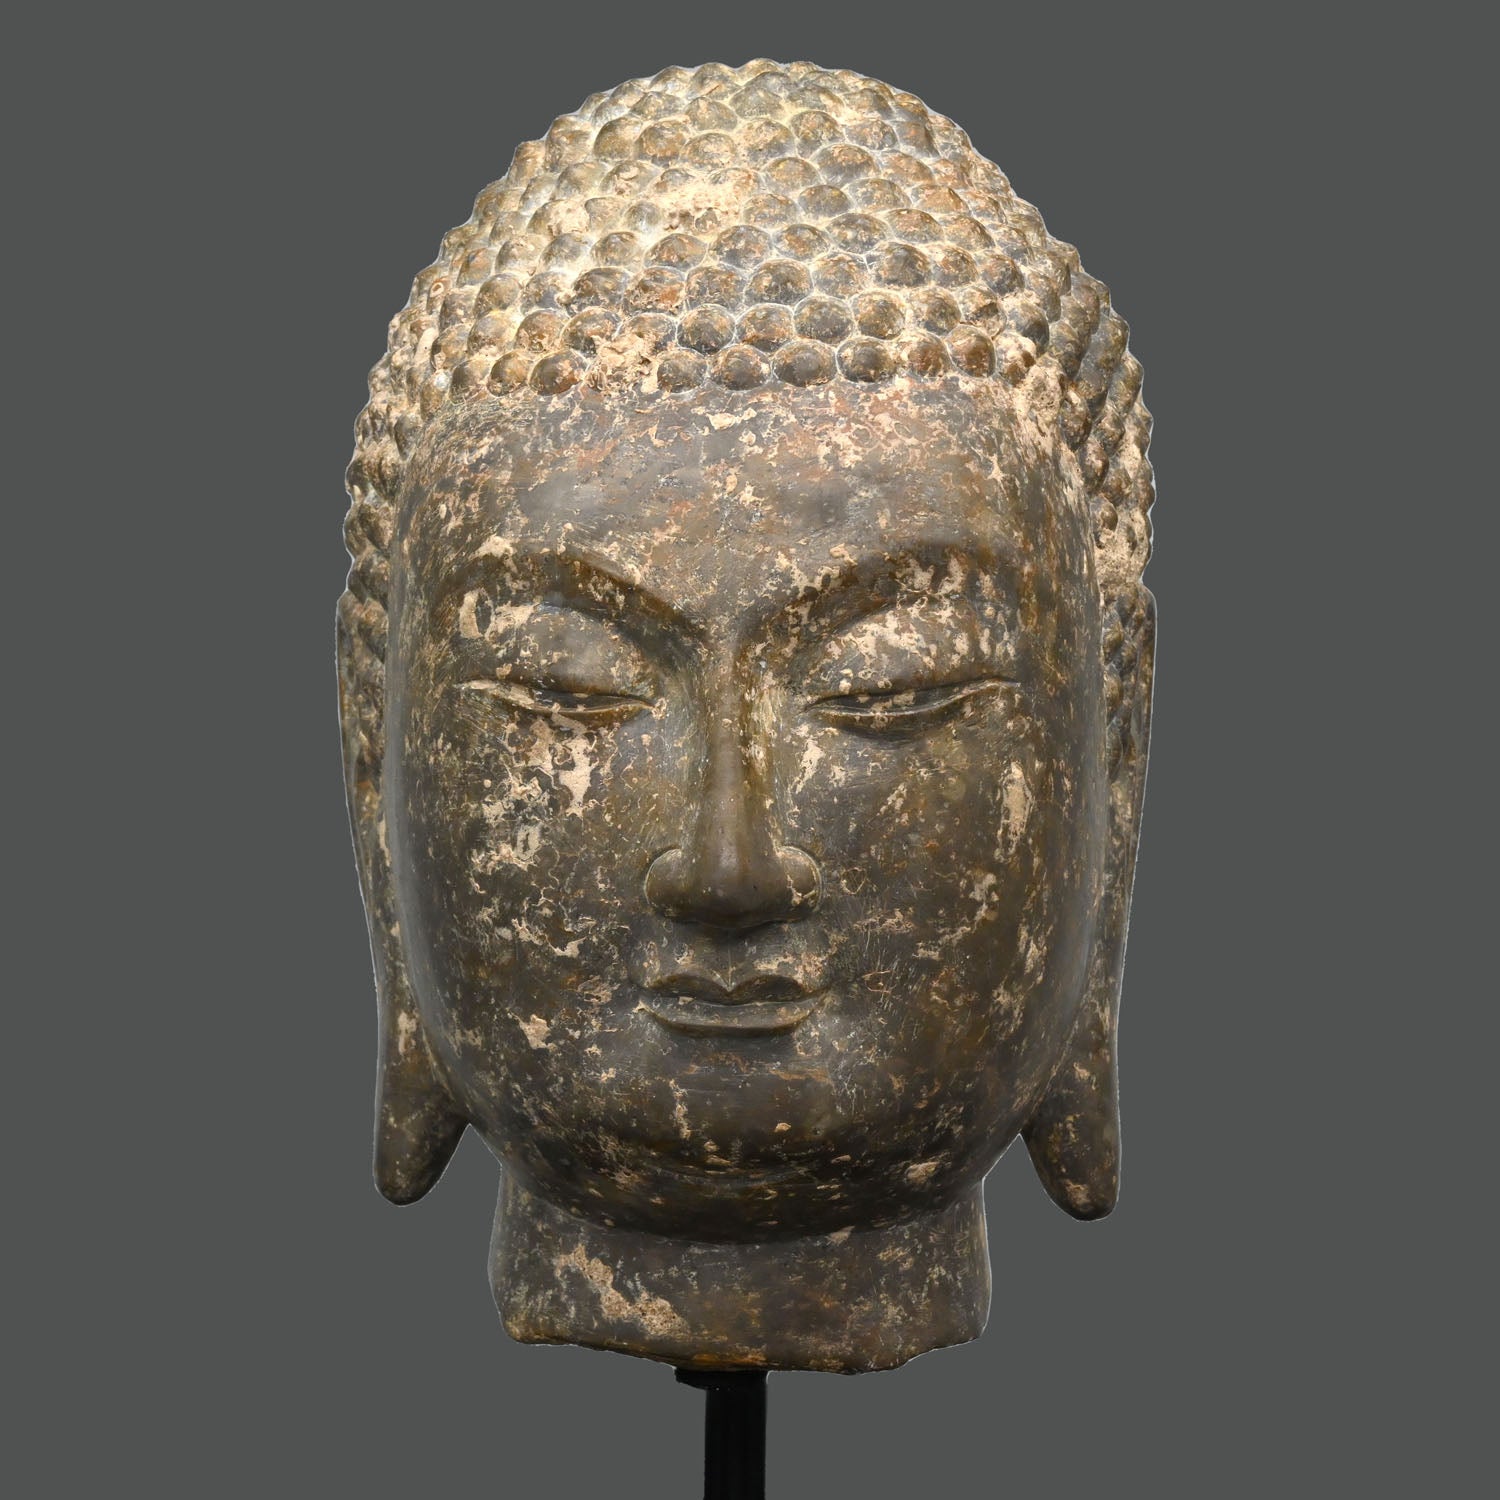 Ein chinesischer Buddha-Kopf aus grauem Kalkstein, Provinz Shandong, Nördliche Qi-Dynastie, ca. 550 - 577 n. Chr